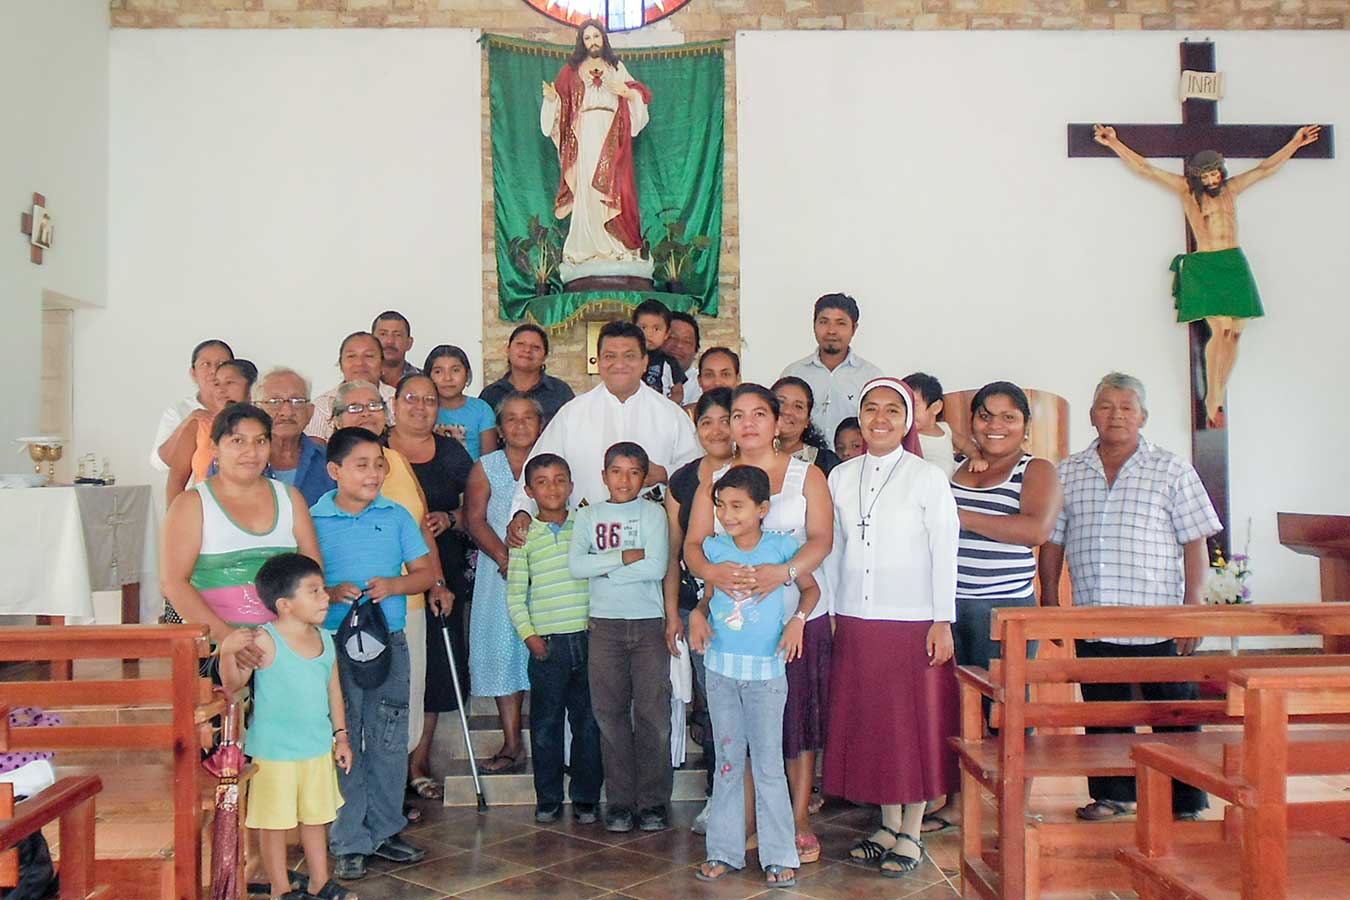 25 años de servicio misionero: P. Juan Leonardo Reyes Gaspar, MG